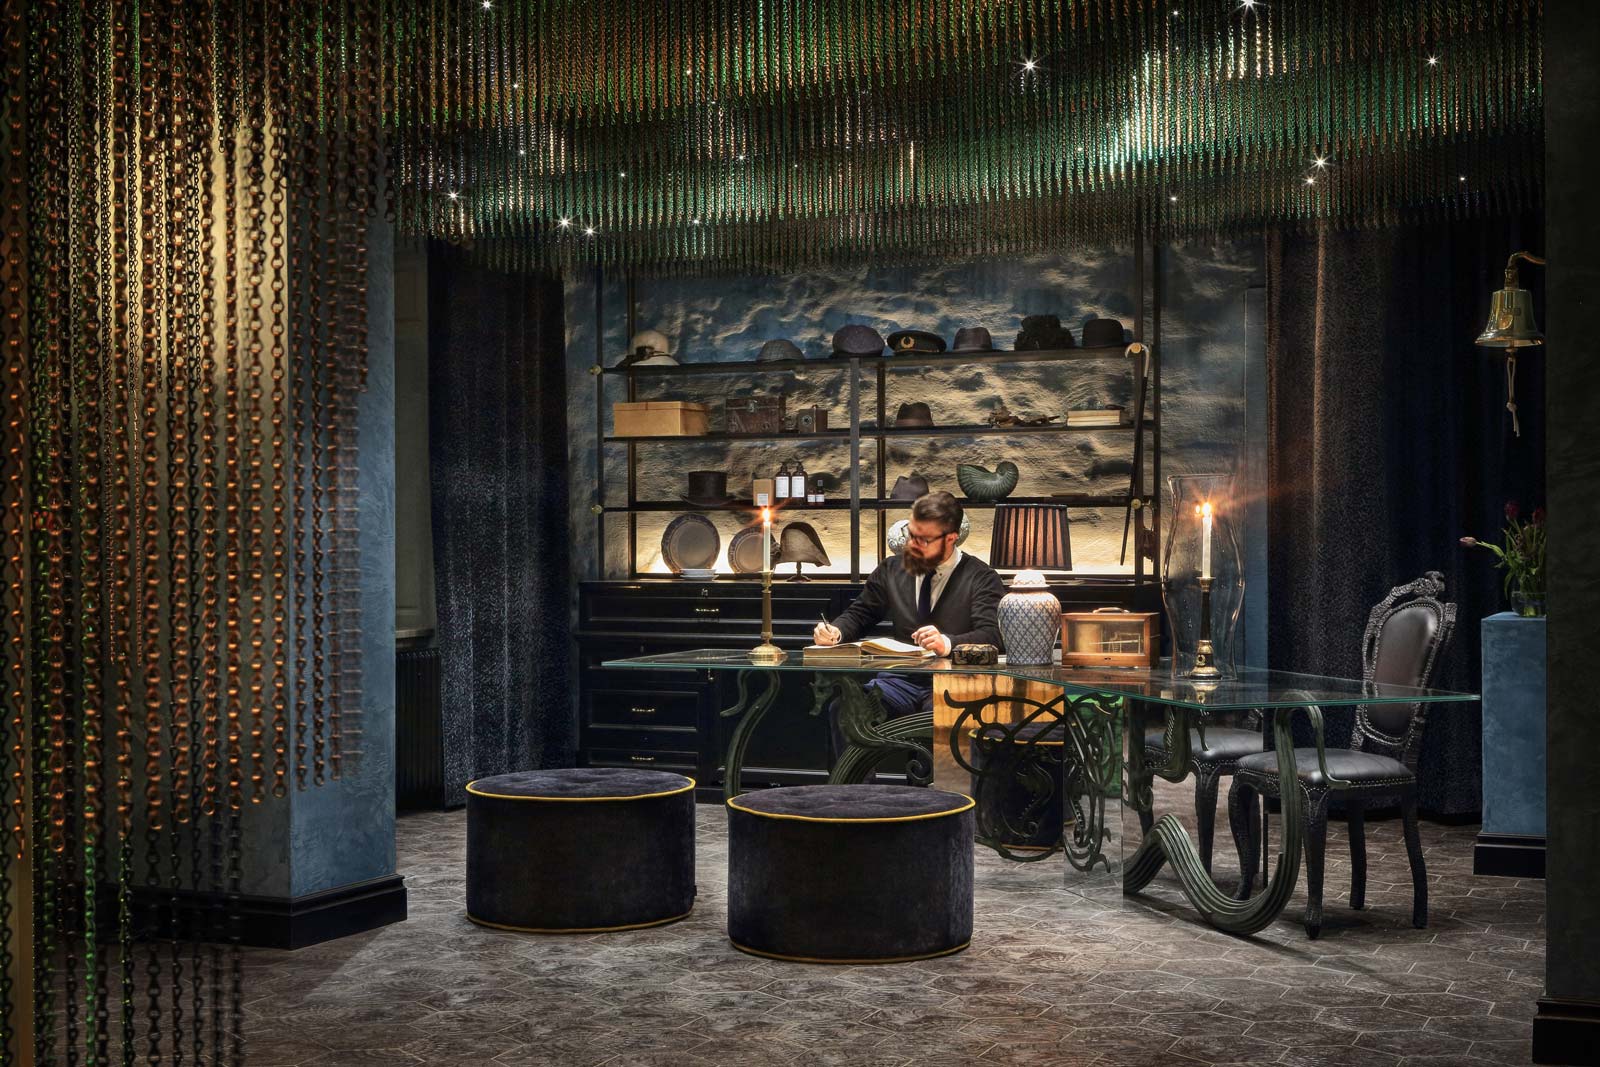 Modern hotellbar med unik belysning och avslappnad atmosfär, där en man arbetar vid ett bord.